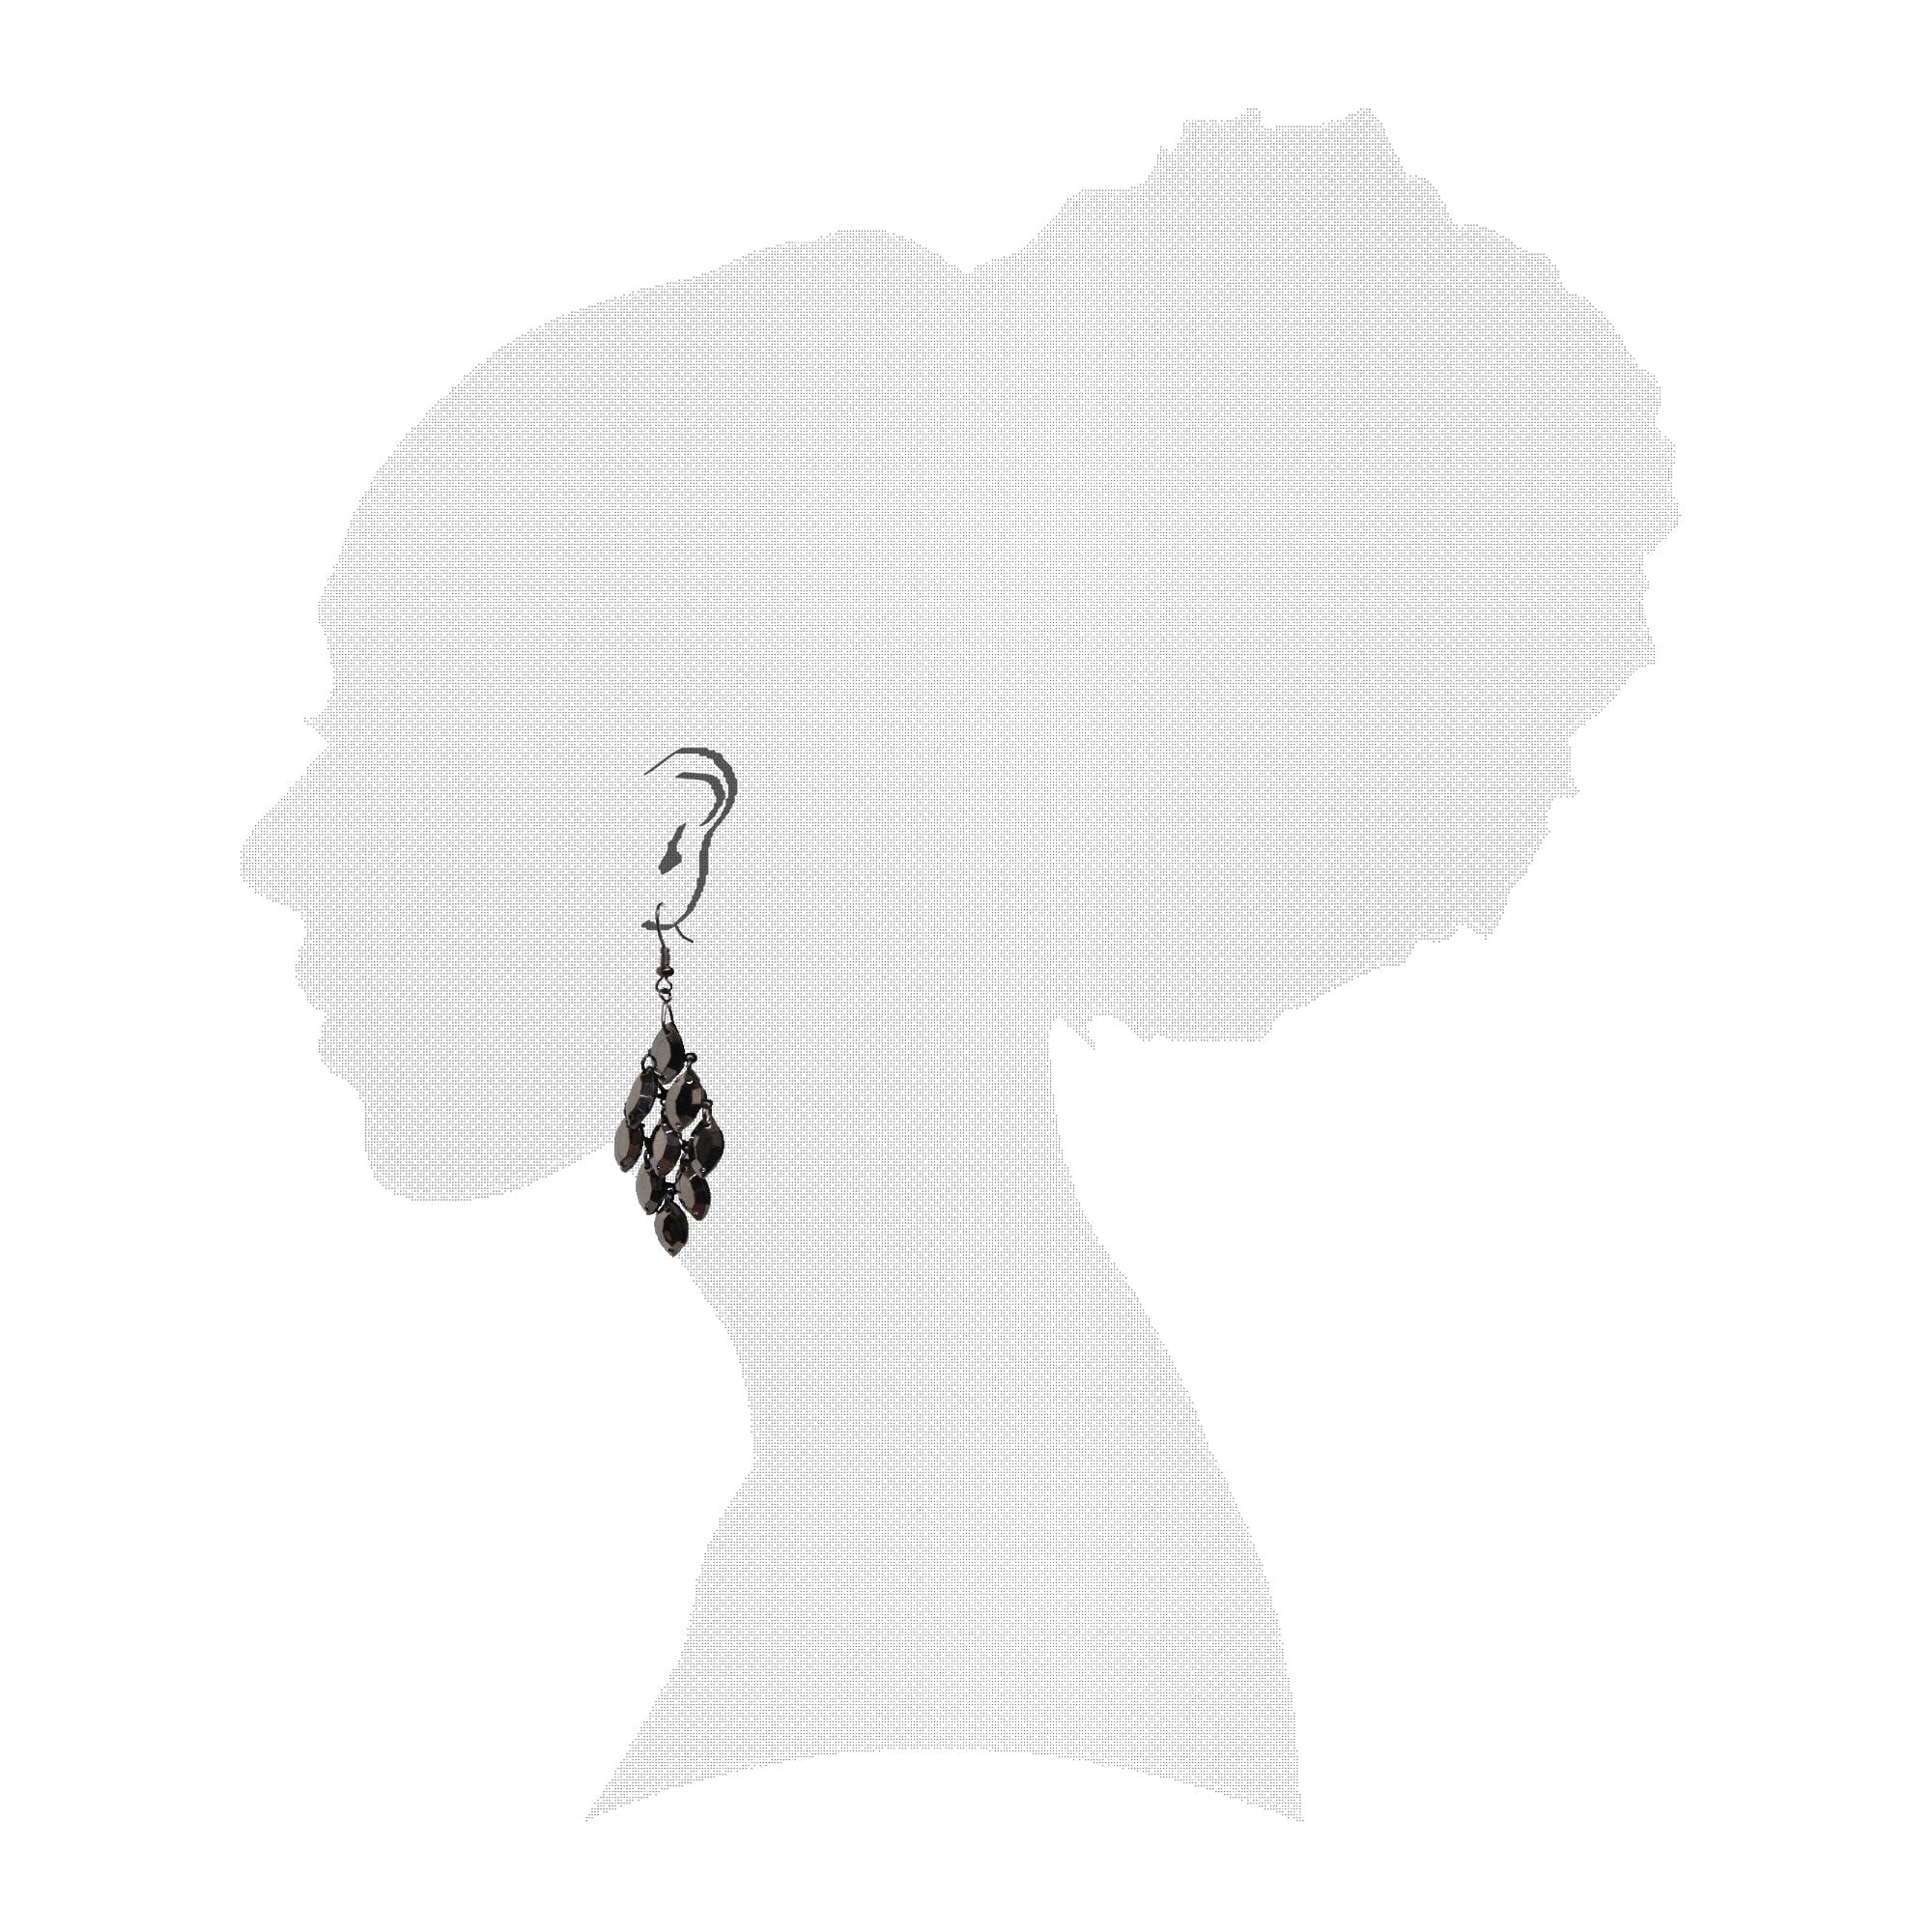 Shop Boho Women's Chandelier Faceted Beads Dangle Drop Earrings for Women Dark Grey, Earrings, USA Boutique